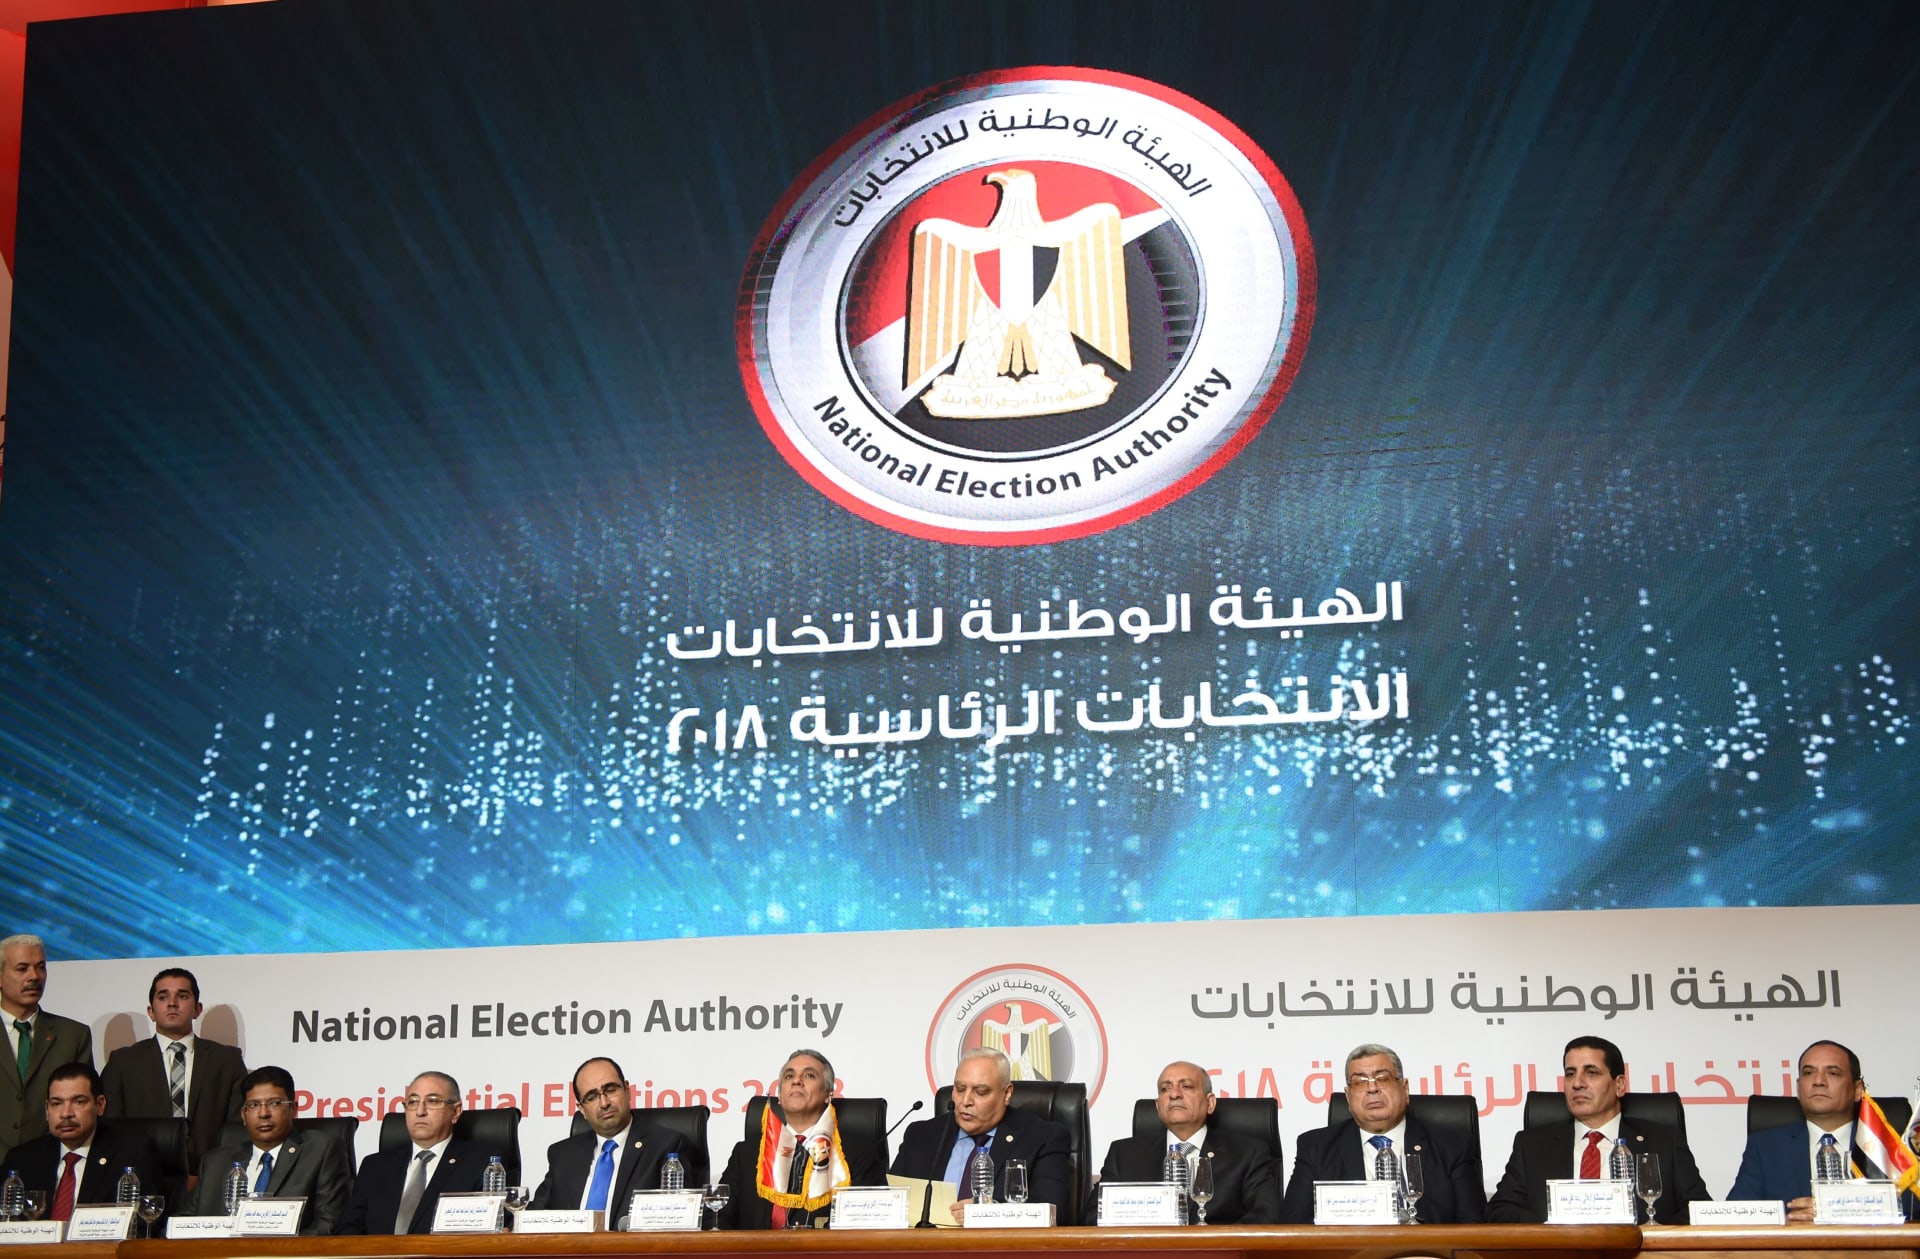 الهيئة الوطنية للانتخابات بمصر تعلن فوز السيسي بنسبة 97.8%